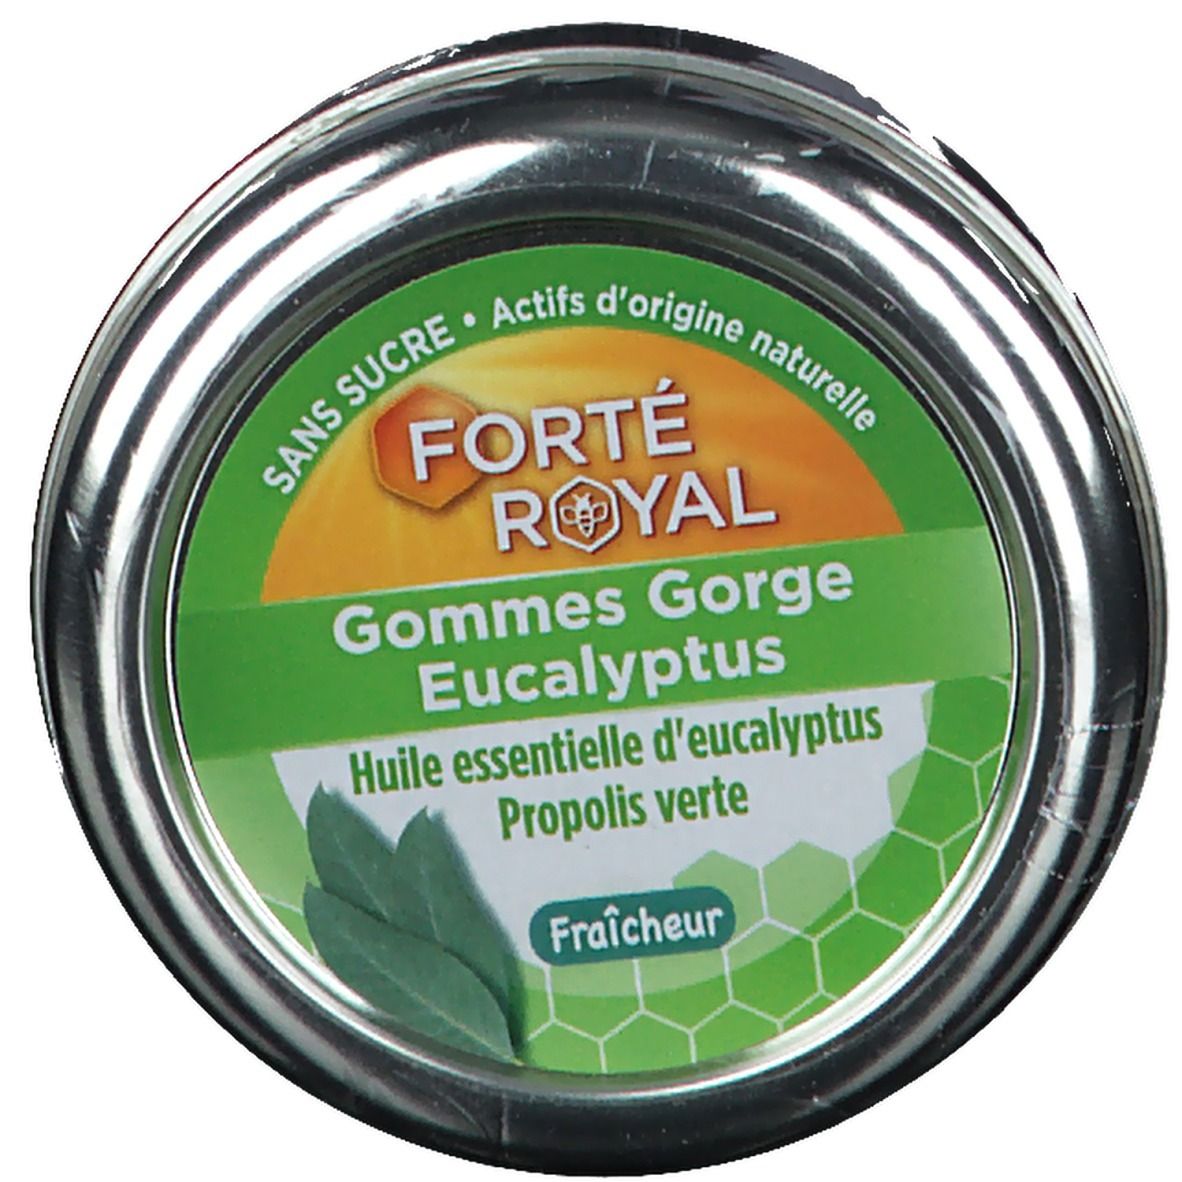 Forté Pharma FORTÉ ROYAL Gommes Gorge Eucalyptus